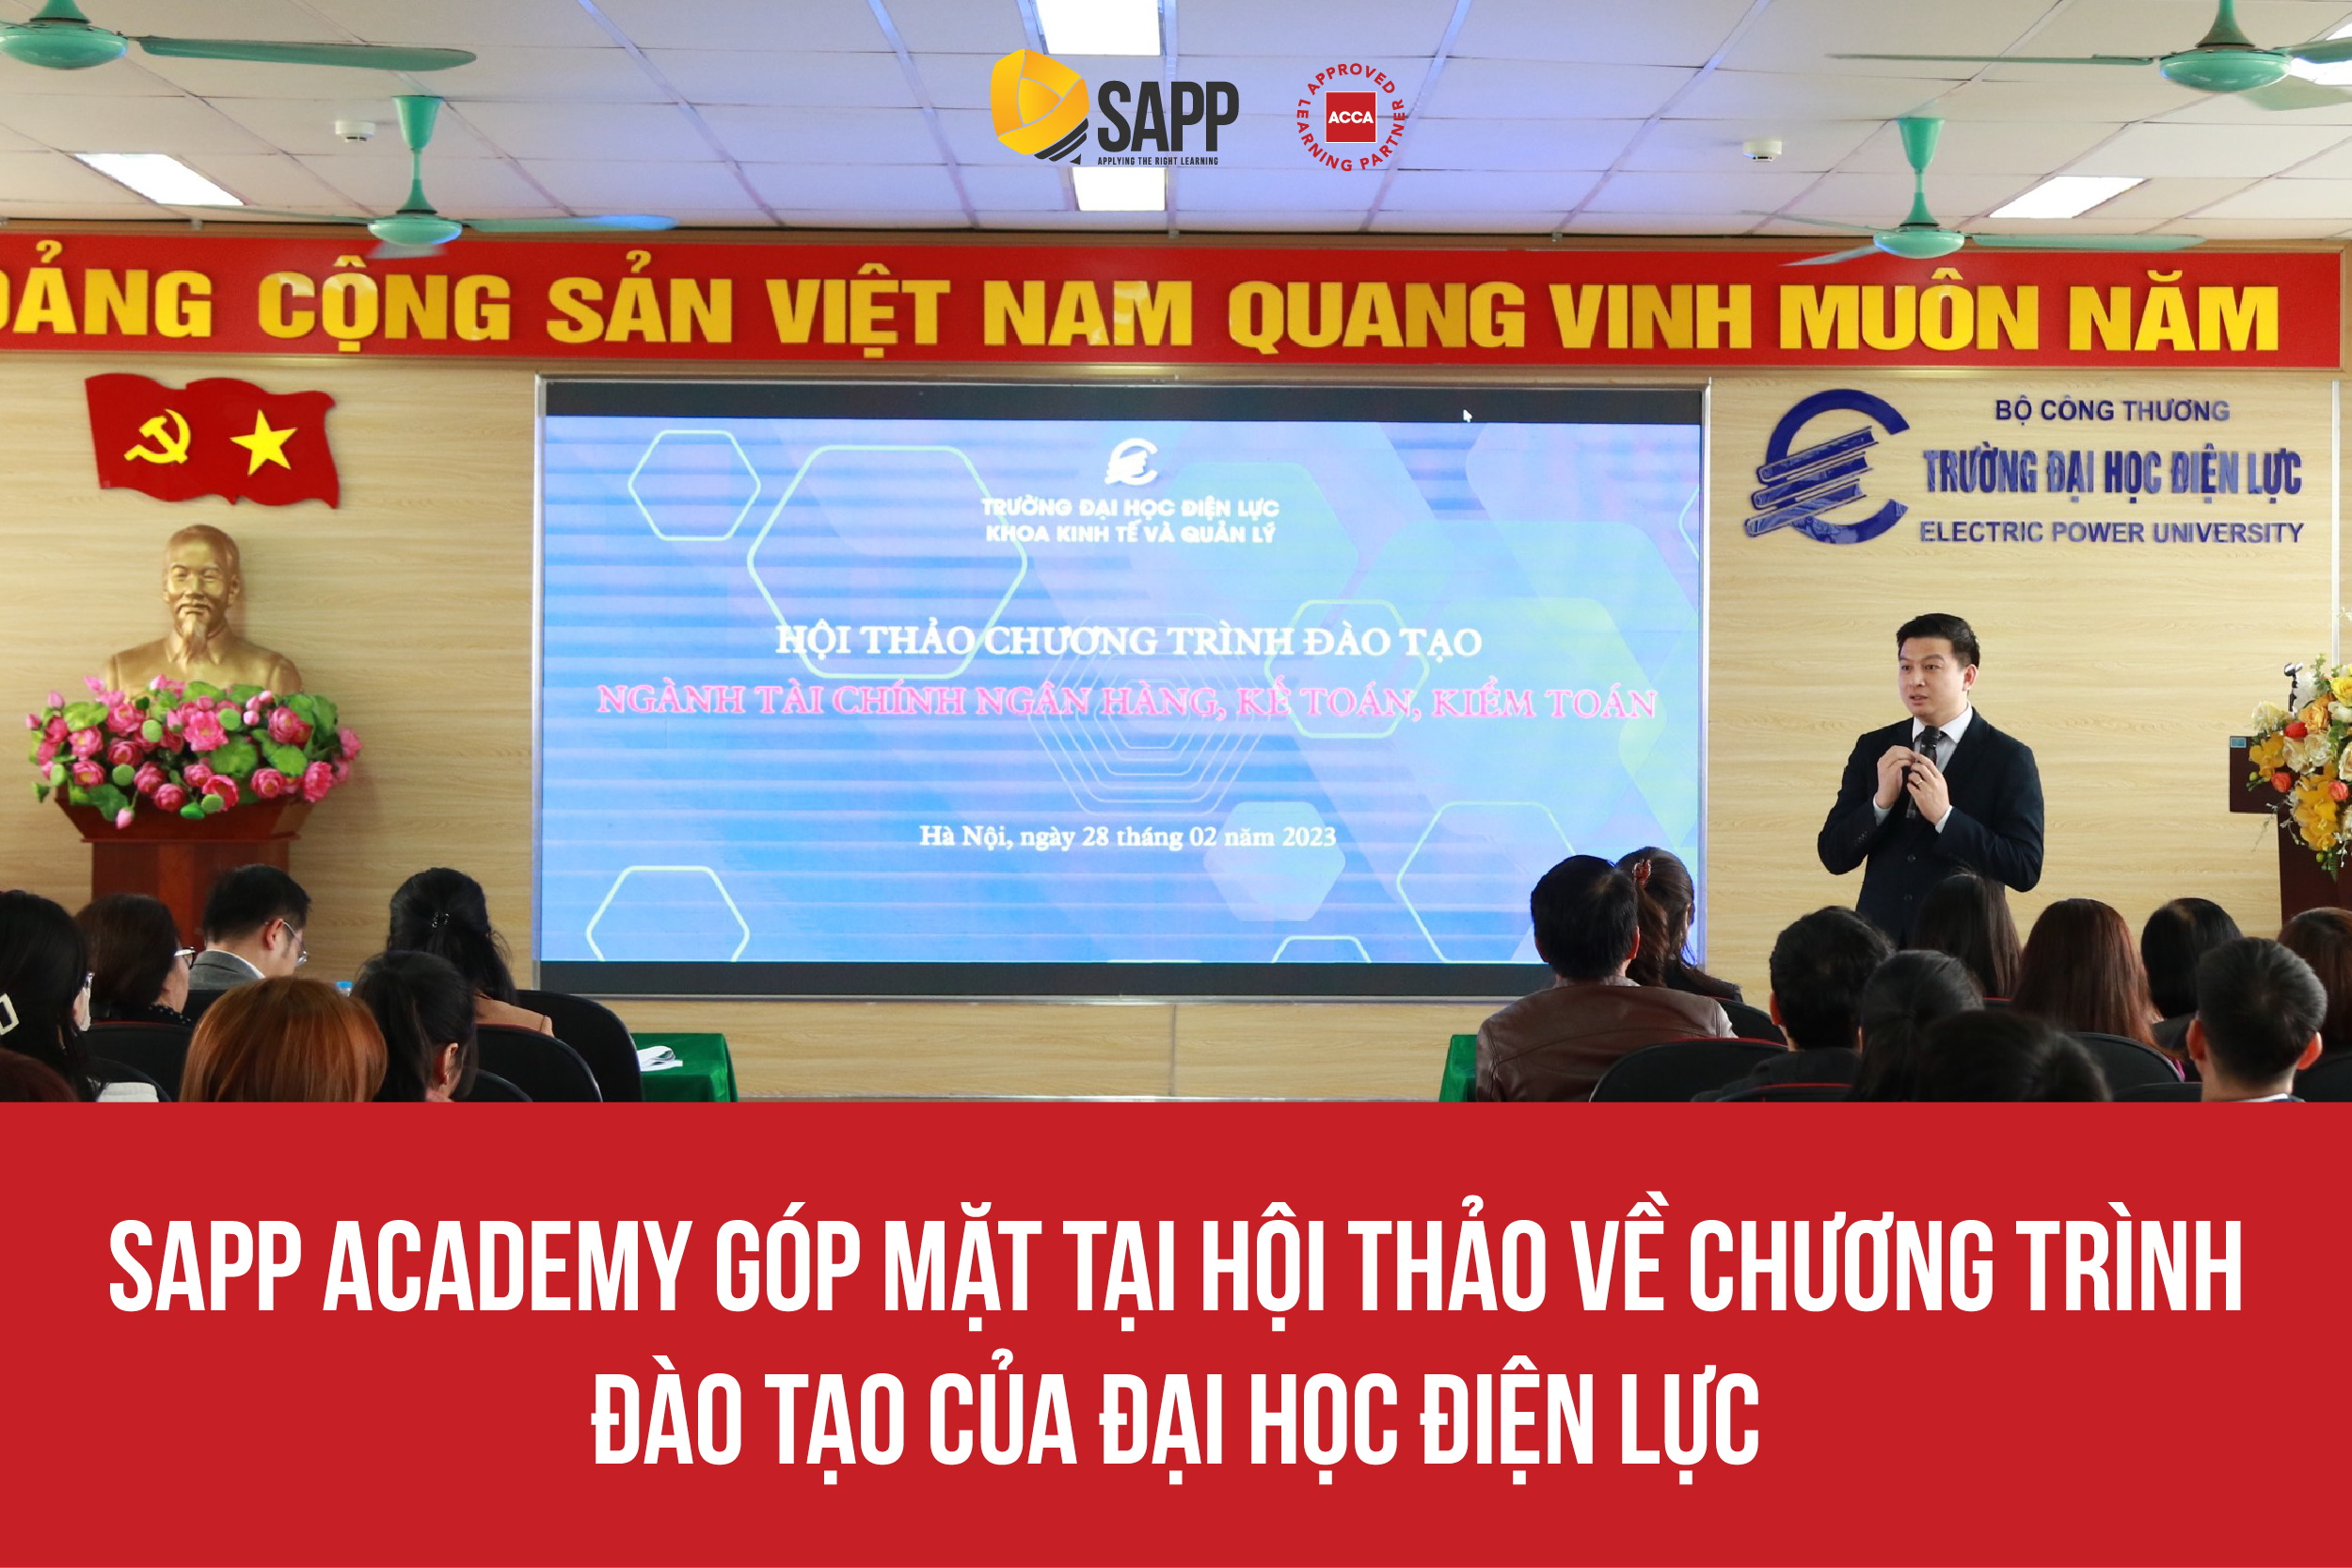 SAPP Academy Góp Mặt Tại Hội Thảo Chương Trình Đào Tạo Của Trường Đại Học Điện Lực